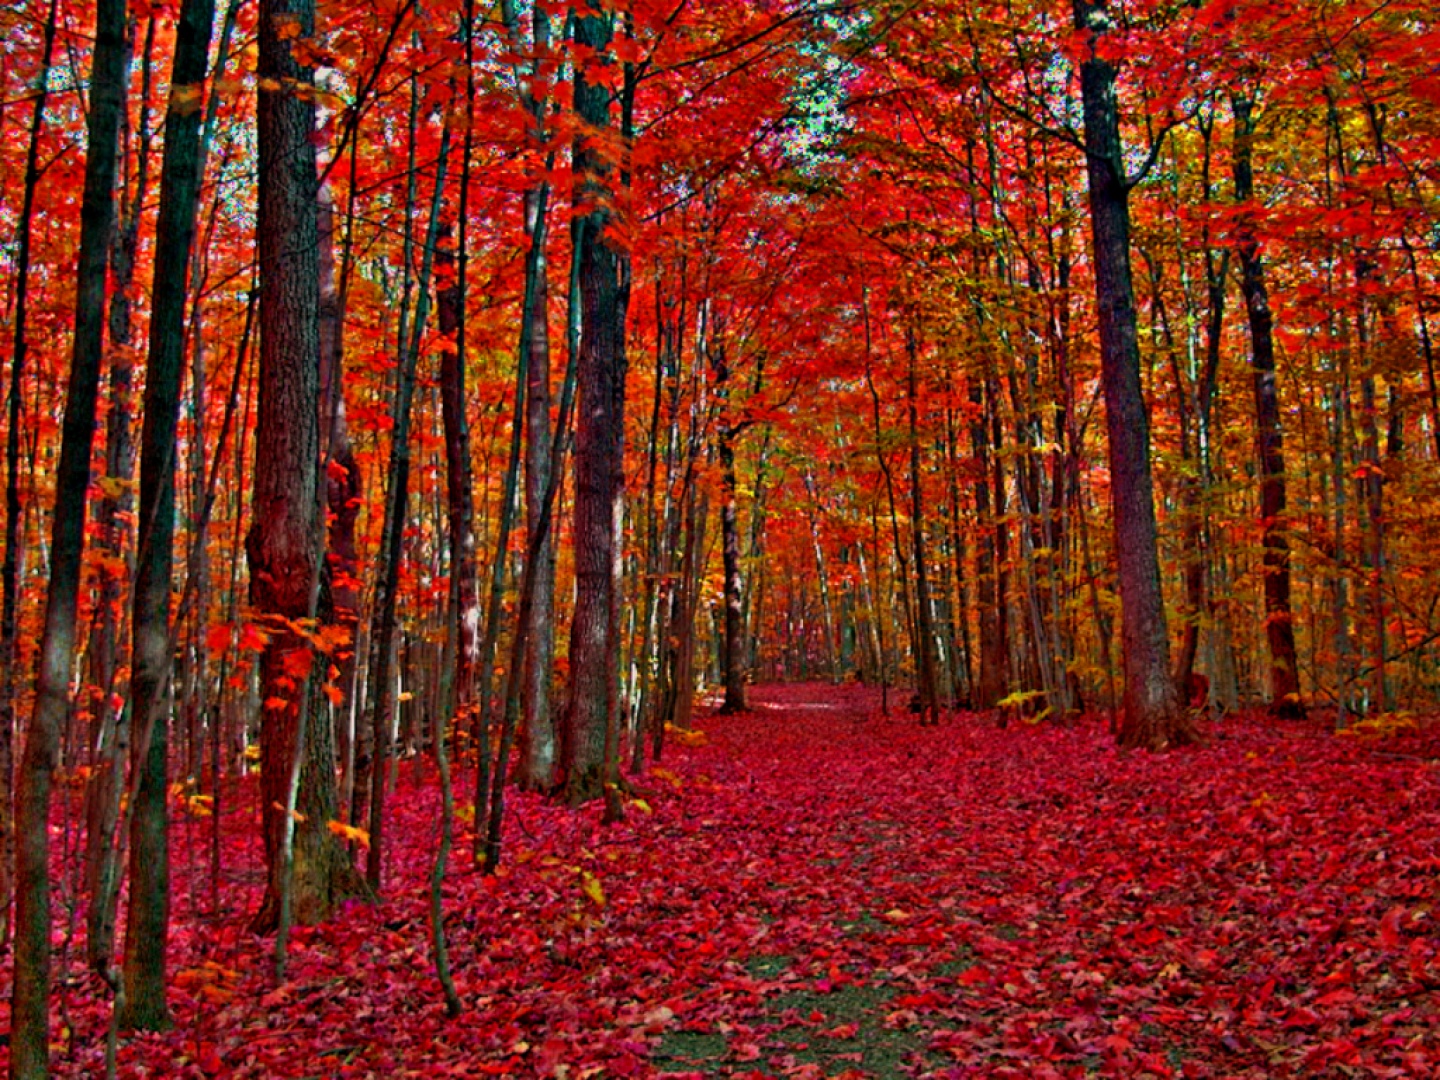 [Imagen: Bosque+lleno+de+hojas+y+arboles+de+color+rojo.jpg]